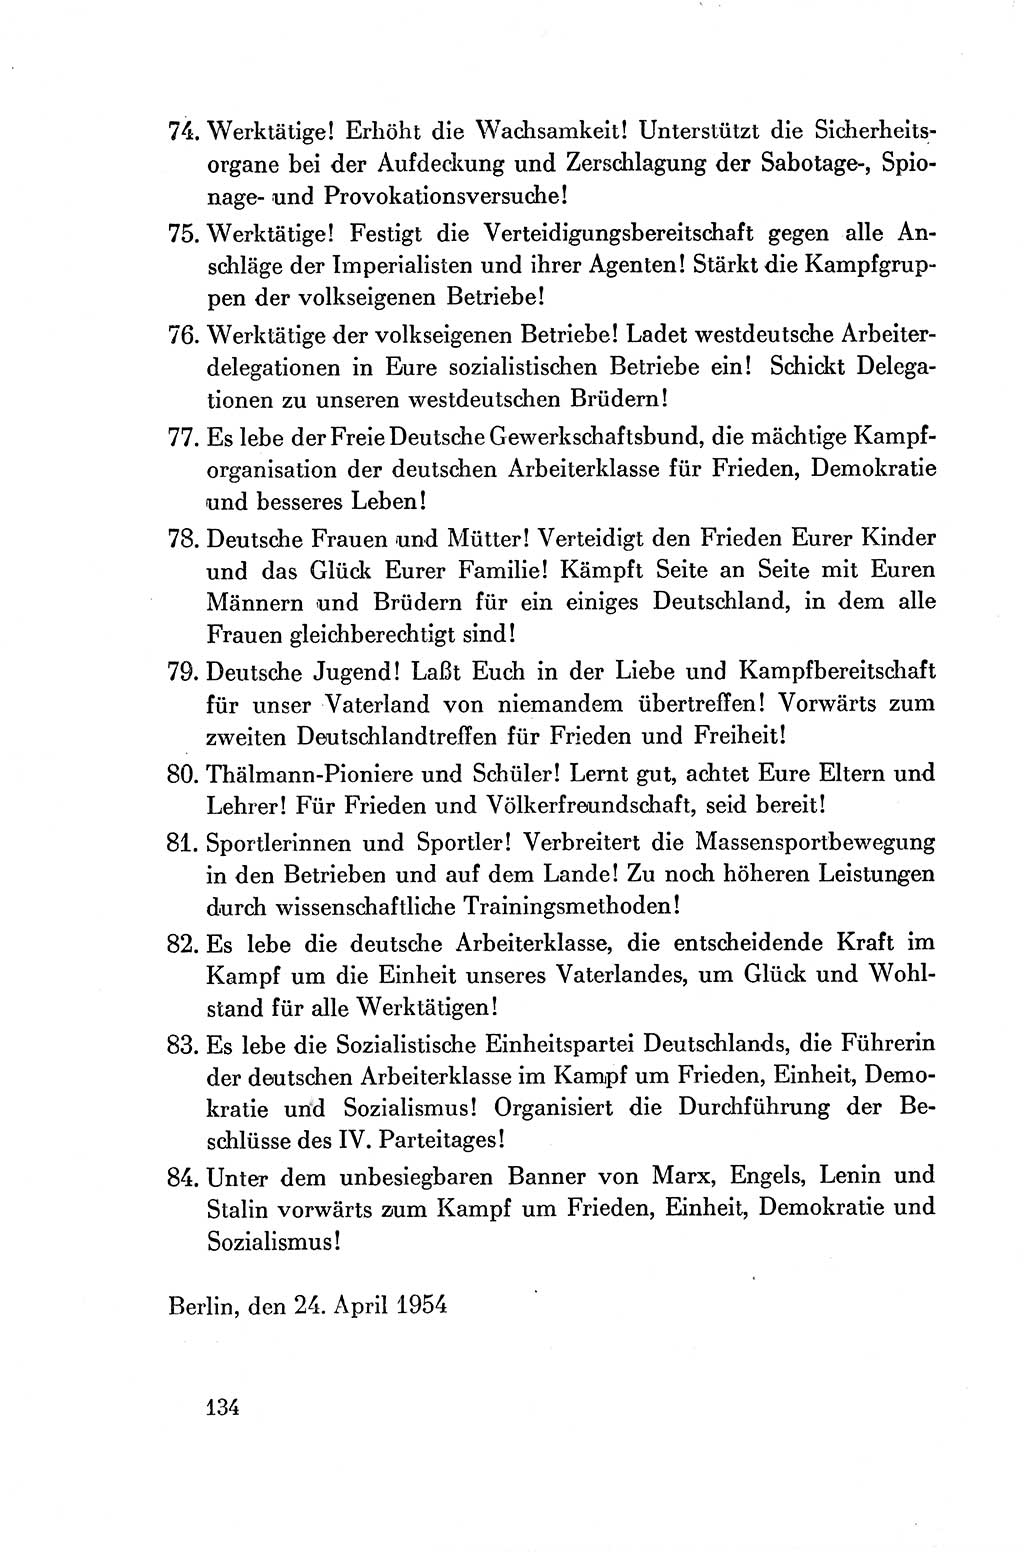 Dokumente der Sozialistischen Einheitspartei Deutschlands (SED) [Deutsche Demokratische Republik (DDR)] 1954-1955, Seite 134 (Dok. SED DDR 1954-1955, S. 134)